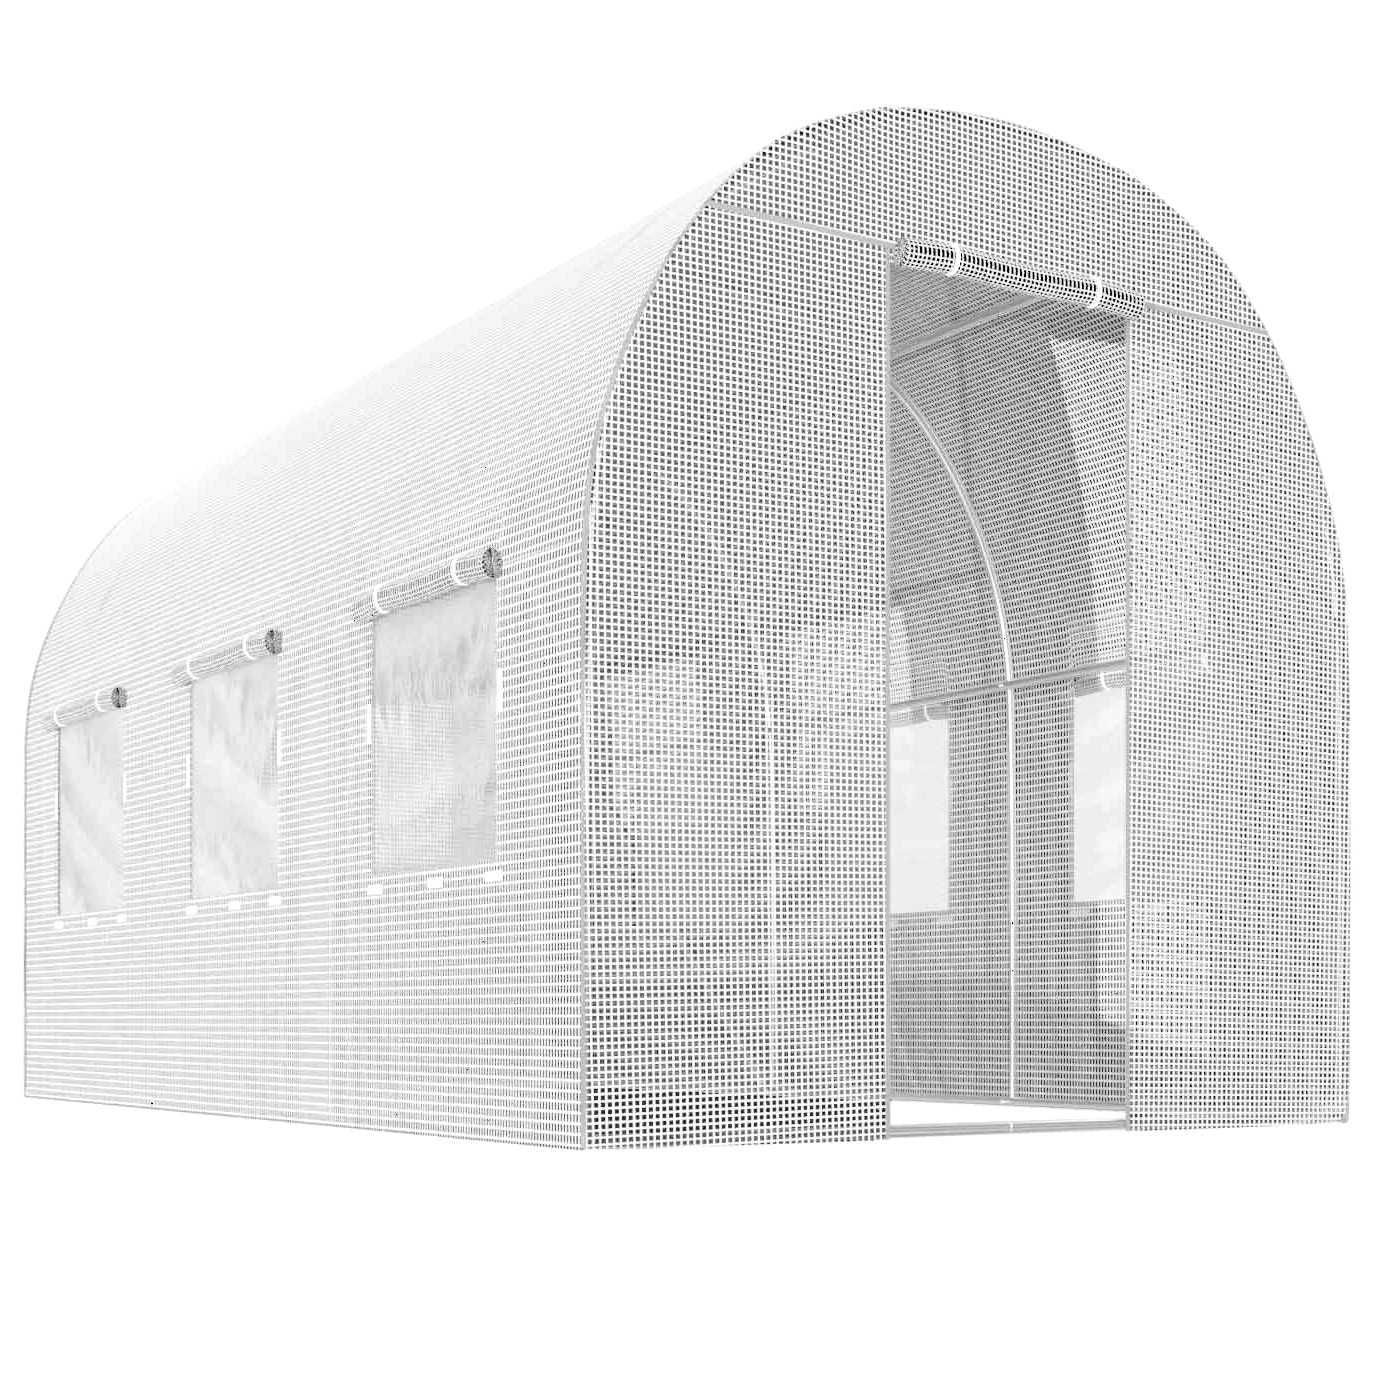 TUNEL FOLIOWY 2x3,5m biały 7m2 ogrodowy na działkę szklarnia + GRATIS